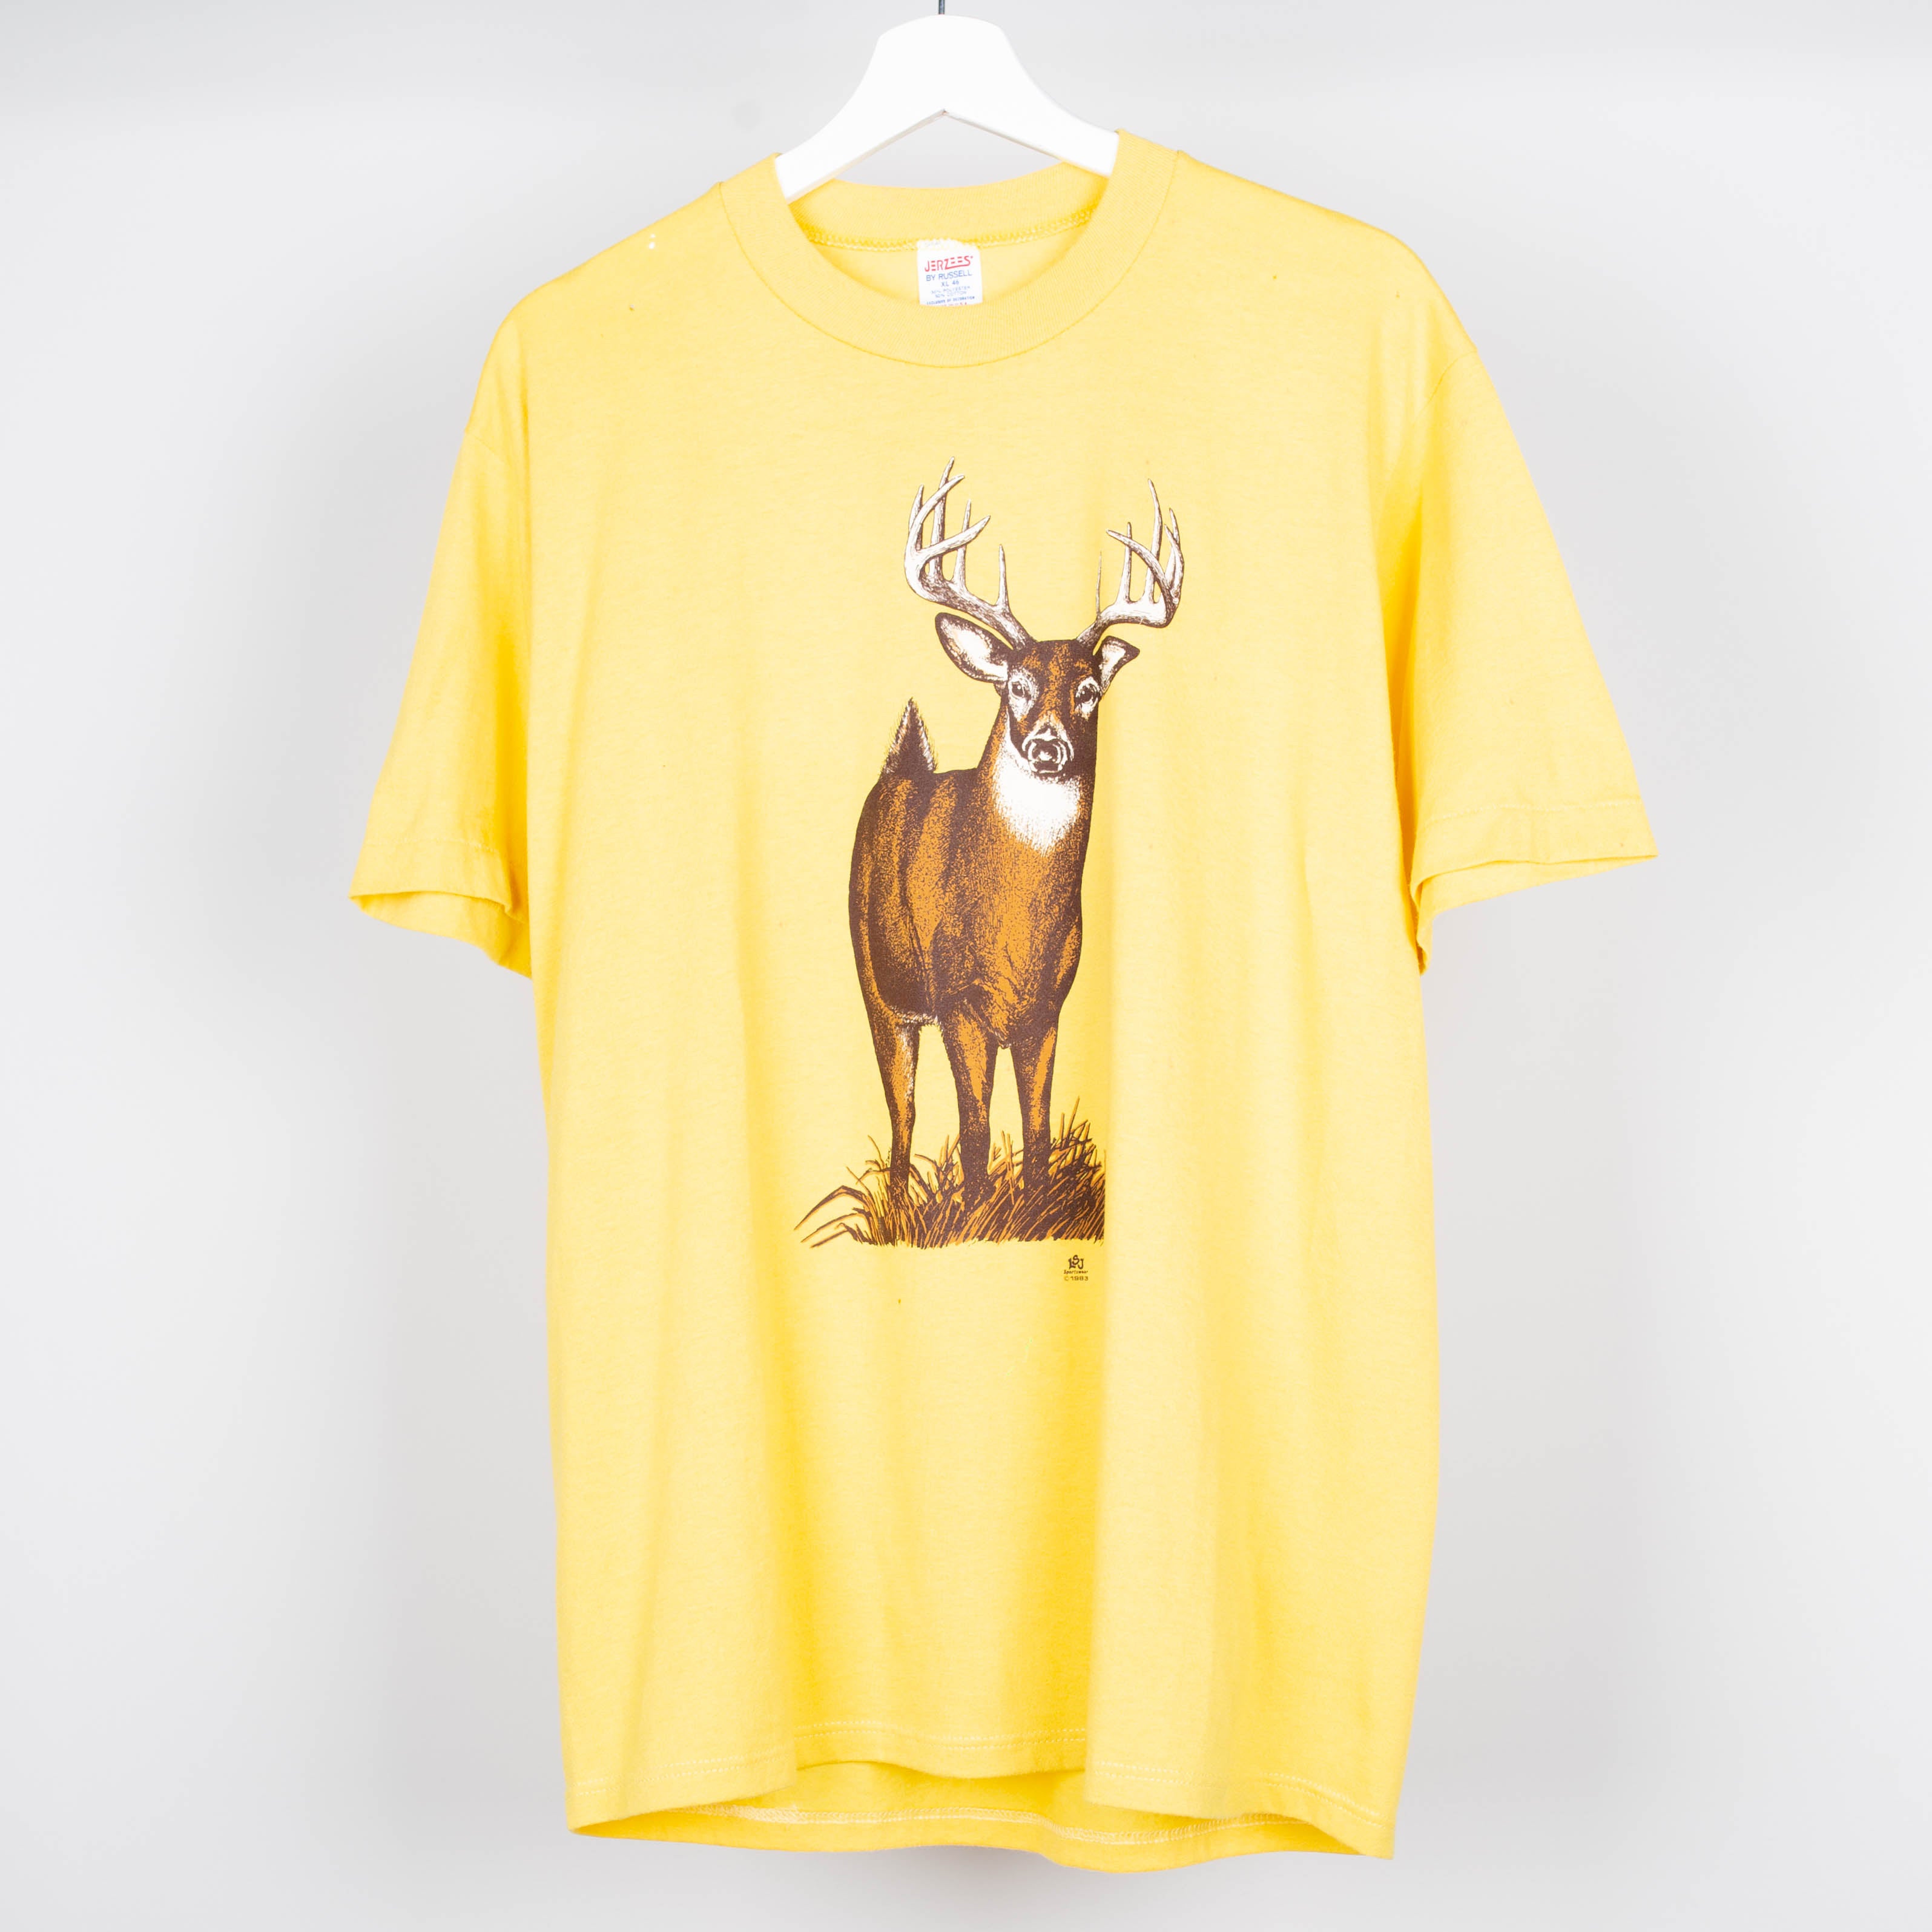 1993 Deer Shirt T-Shirt Size M